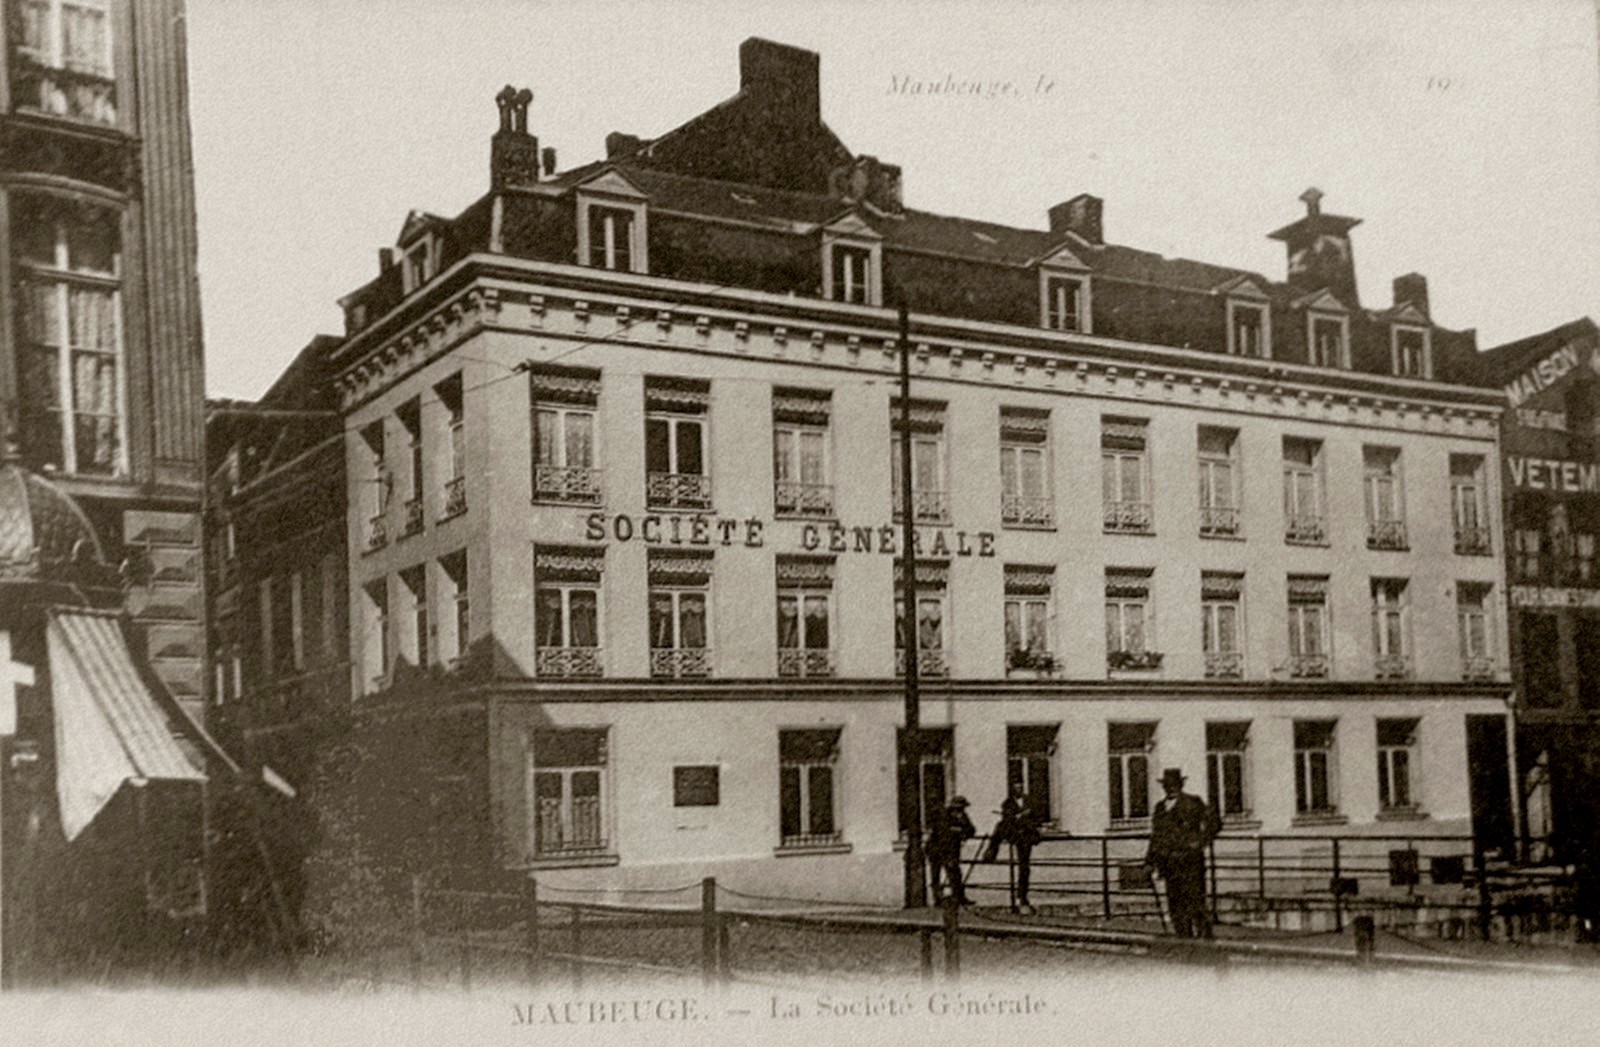 Maubeuge, la société générale avant 1914.